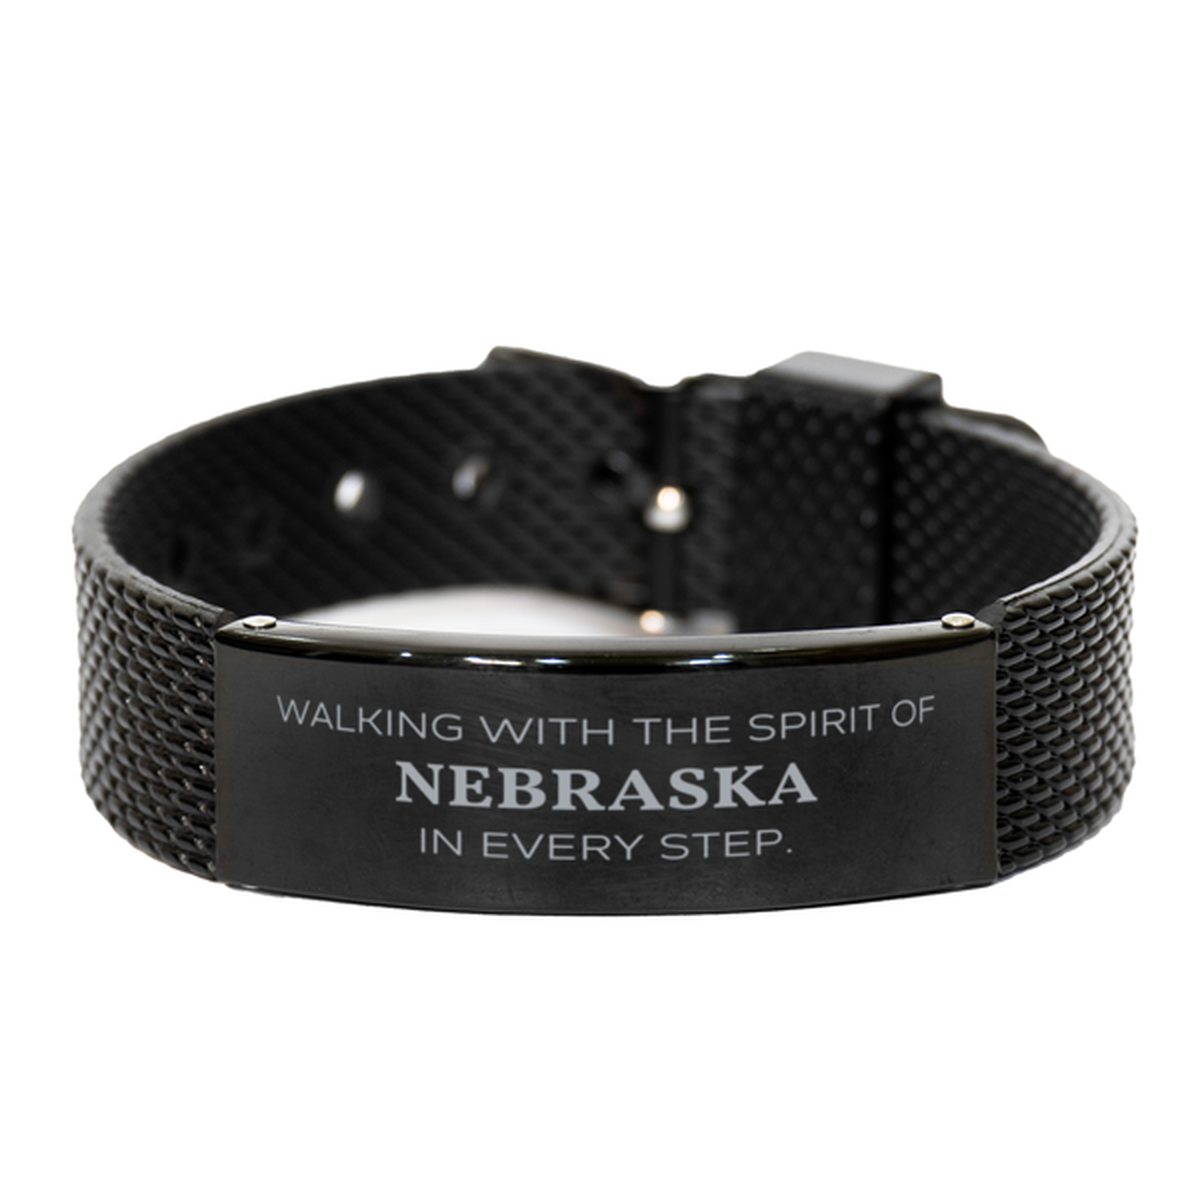 Nebraska Gifts, Walking with the spirit, Love Nebraska Birthday Christmas Black Shark Mesh Bracelet For Nebraska People, Men, Women, Friends